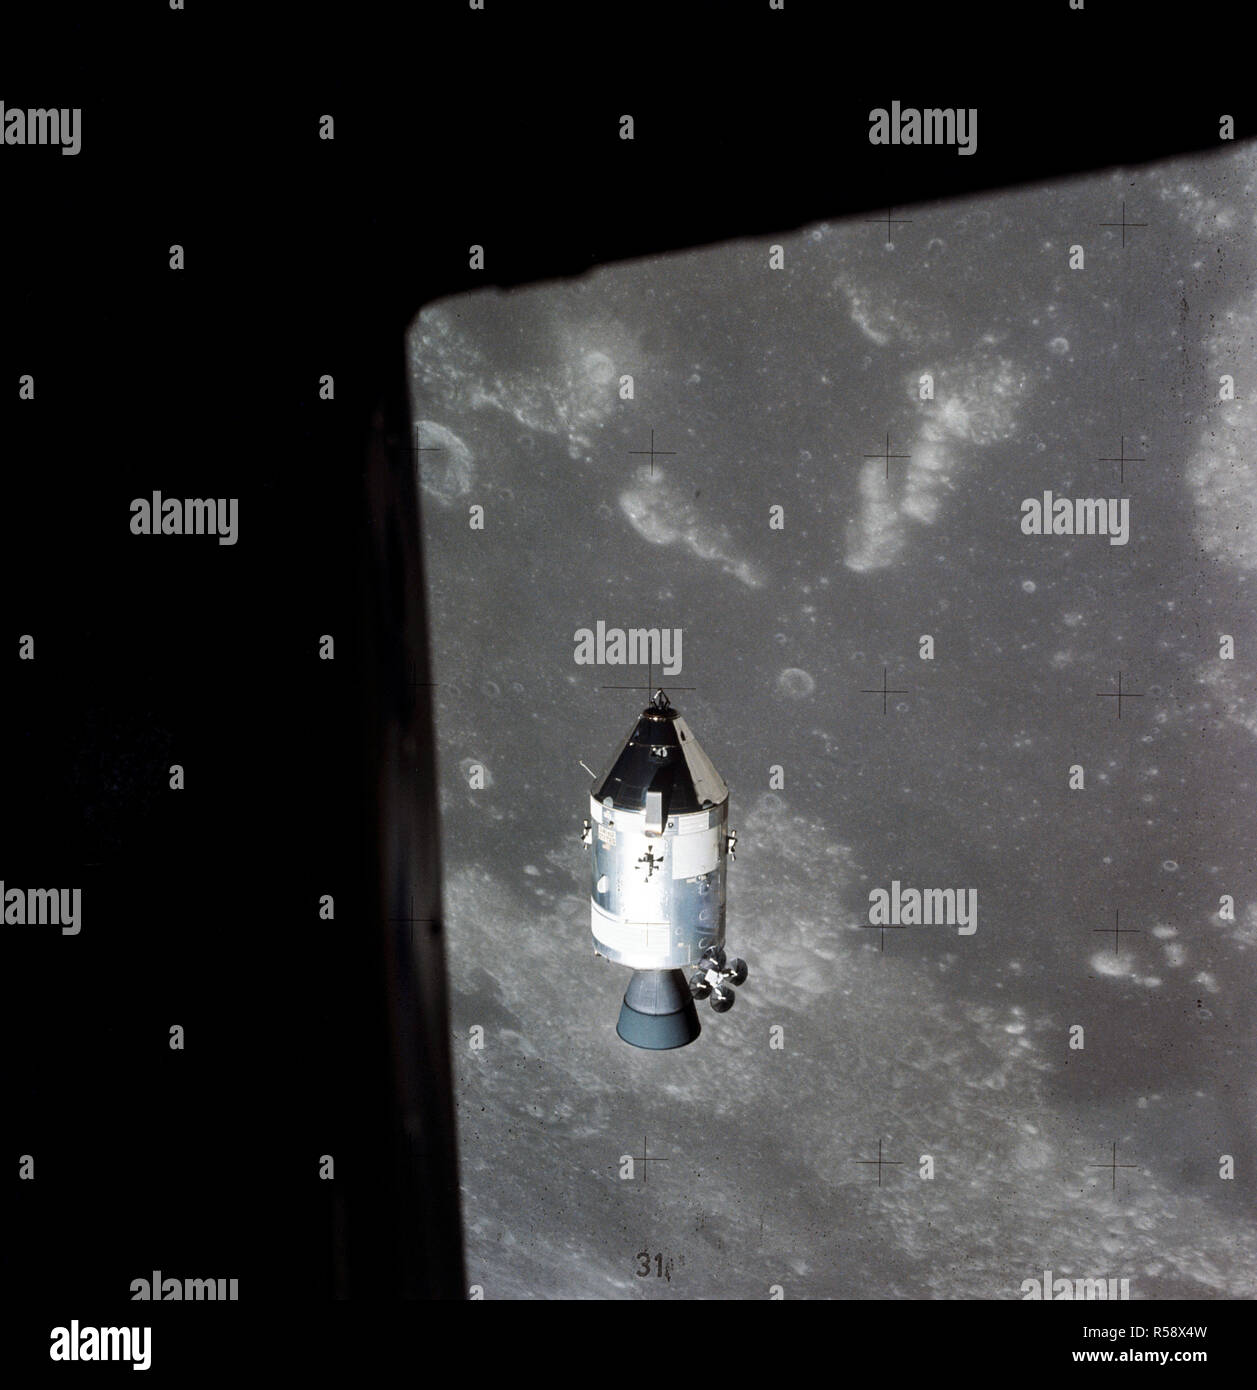 (30 luglio 1971) --- Una vista dell'Apollo 15 il comando e moduli di servizio (CSM) in orbita lunare come fotografato dal Modulo Lunare (LM) appena dopo il rendezvous. Il lunar nearside è in background. Questa vista è guardando a sud-est nel mare della fertilità. Il cratere Taruntius è al centro a destra il bordo dell'immagine. Foto Stock